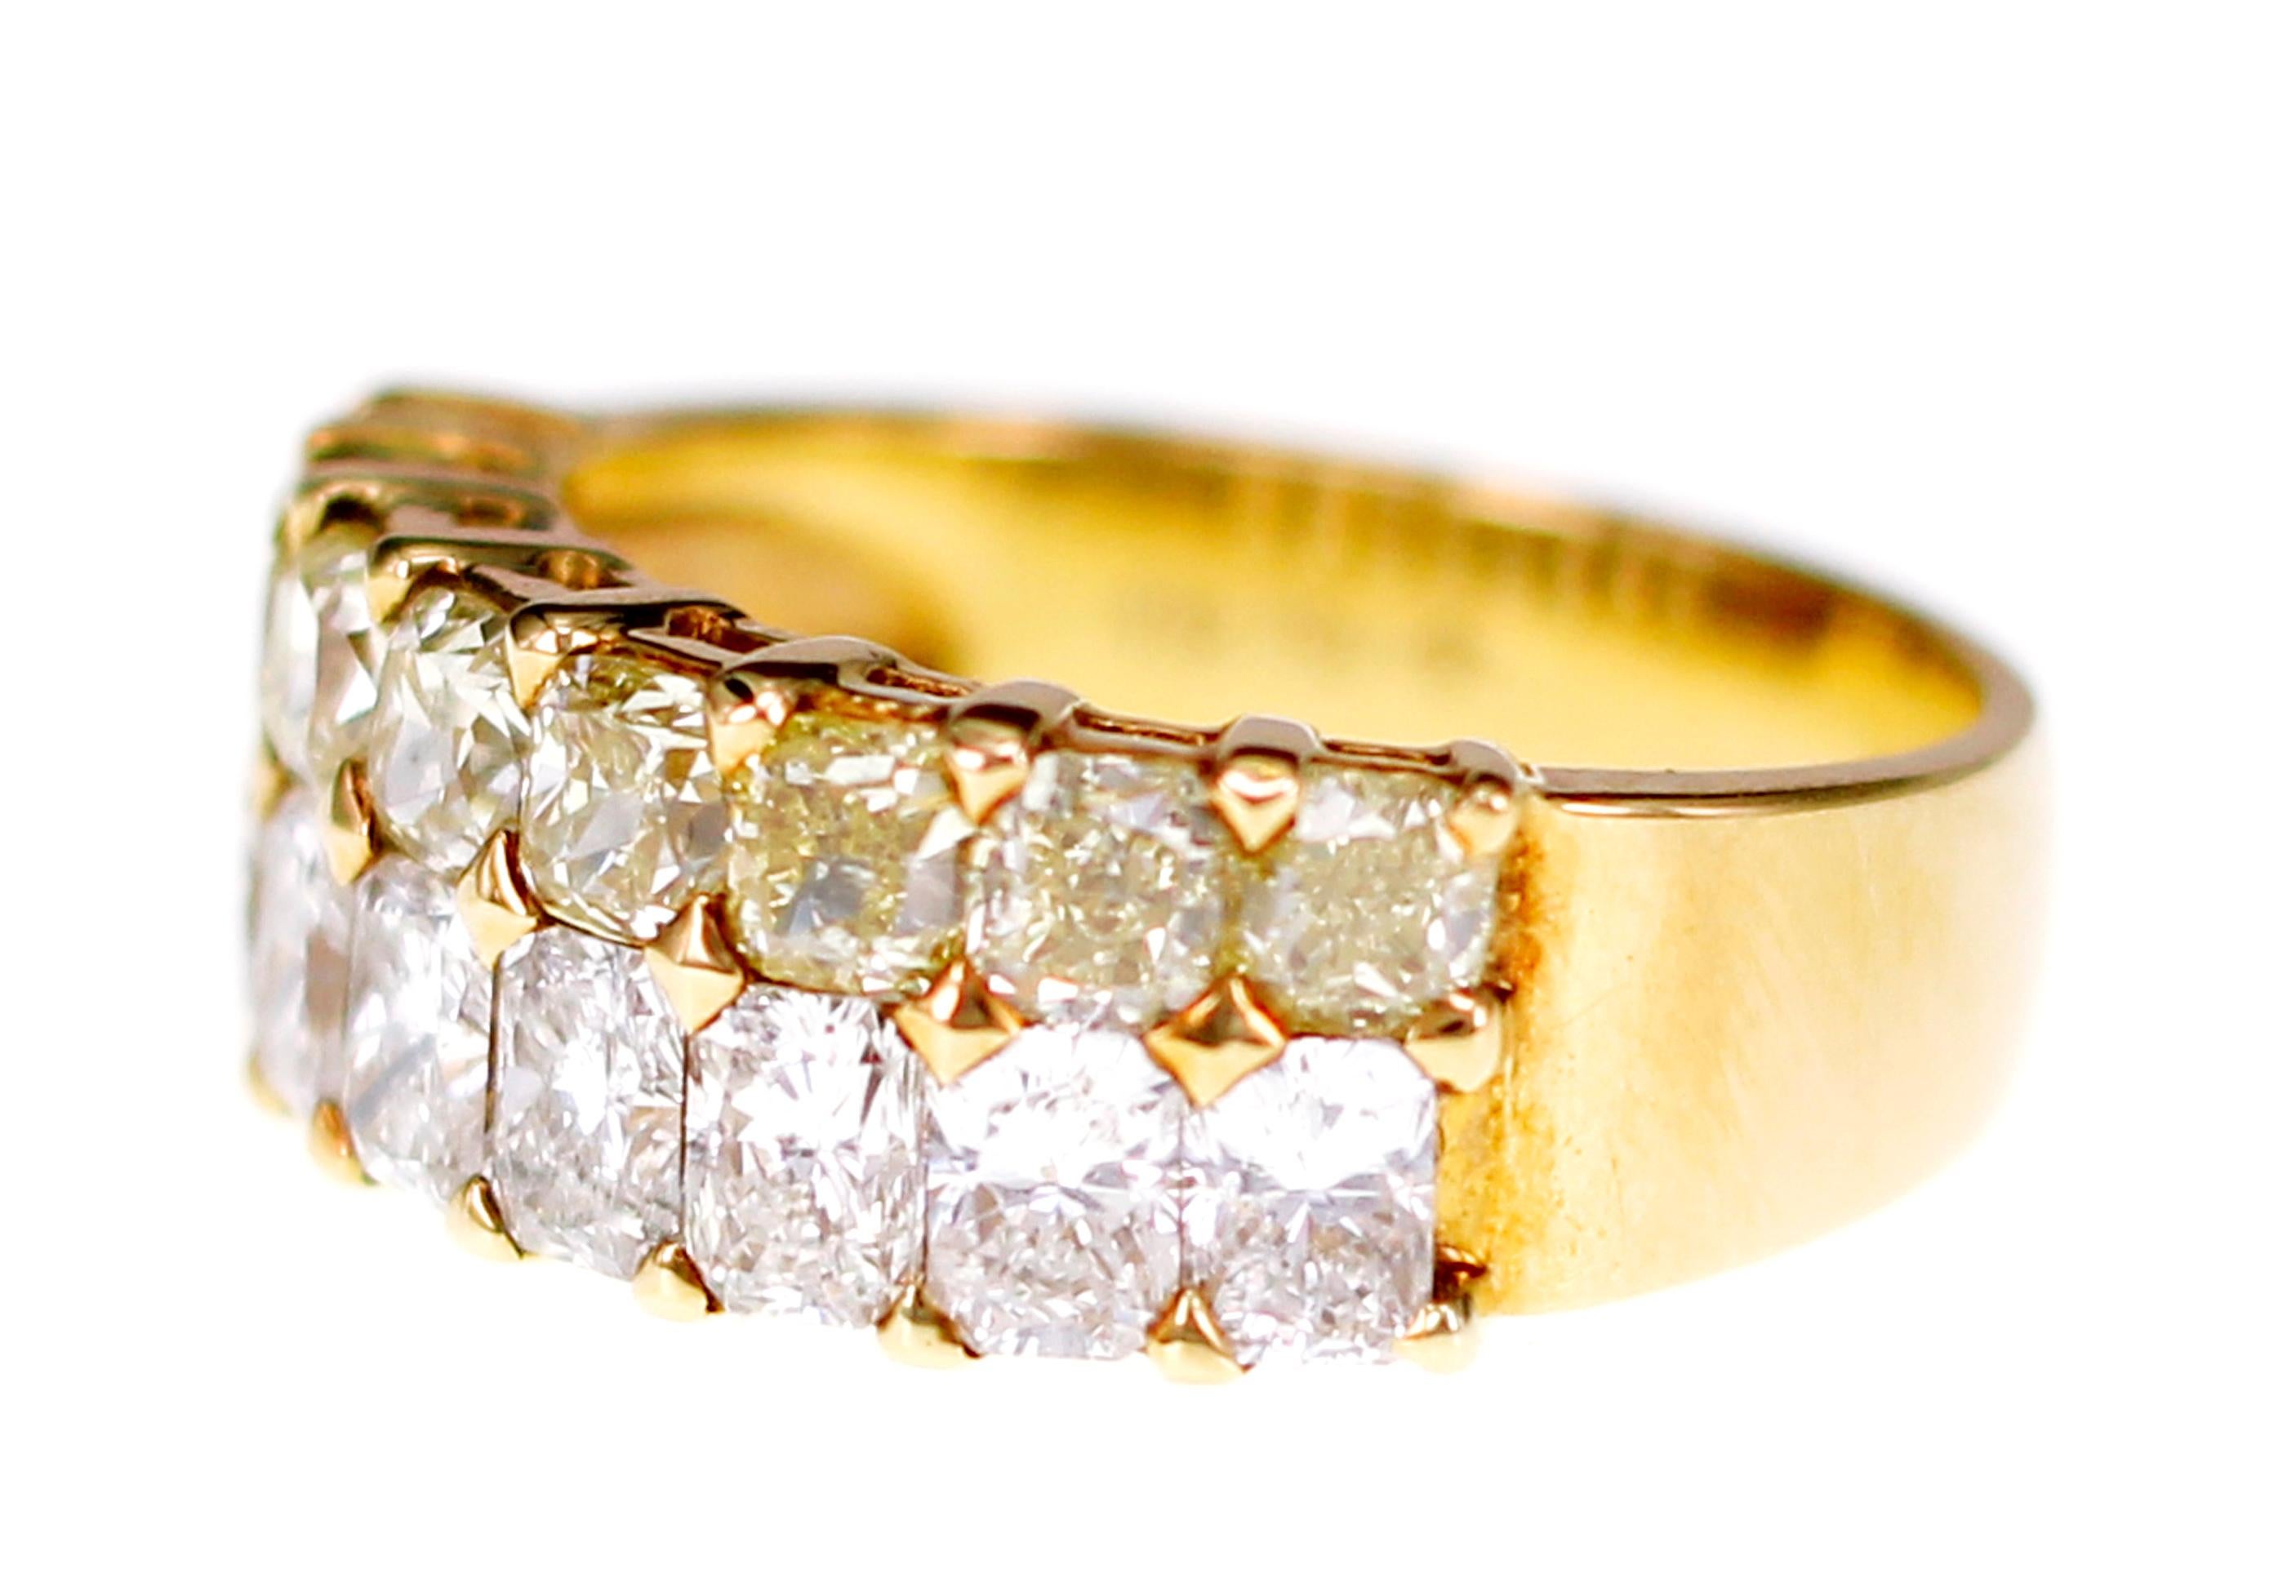 Une combinaison explosive de diamant jaune de fantaisie naturel et de diamant brillant blanc radiant naturel est sertie sur un anneau.
Il peut être utilisé pour tous les événements et possède tous les charmes pour devenir votre préféré.